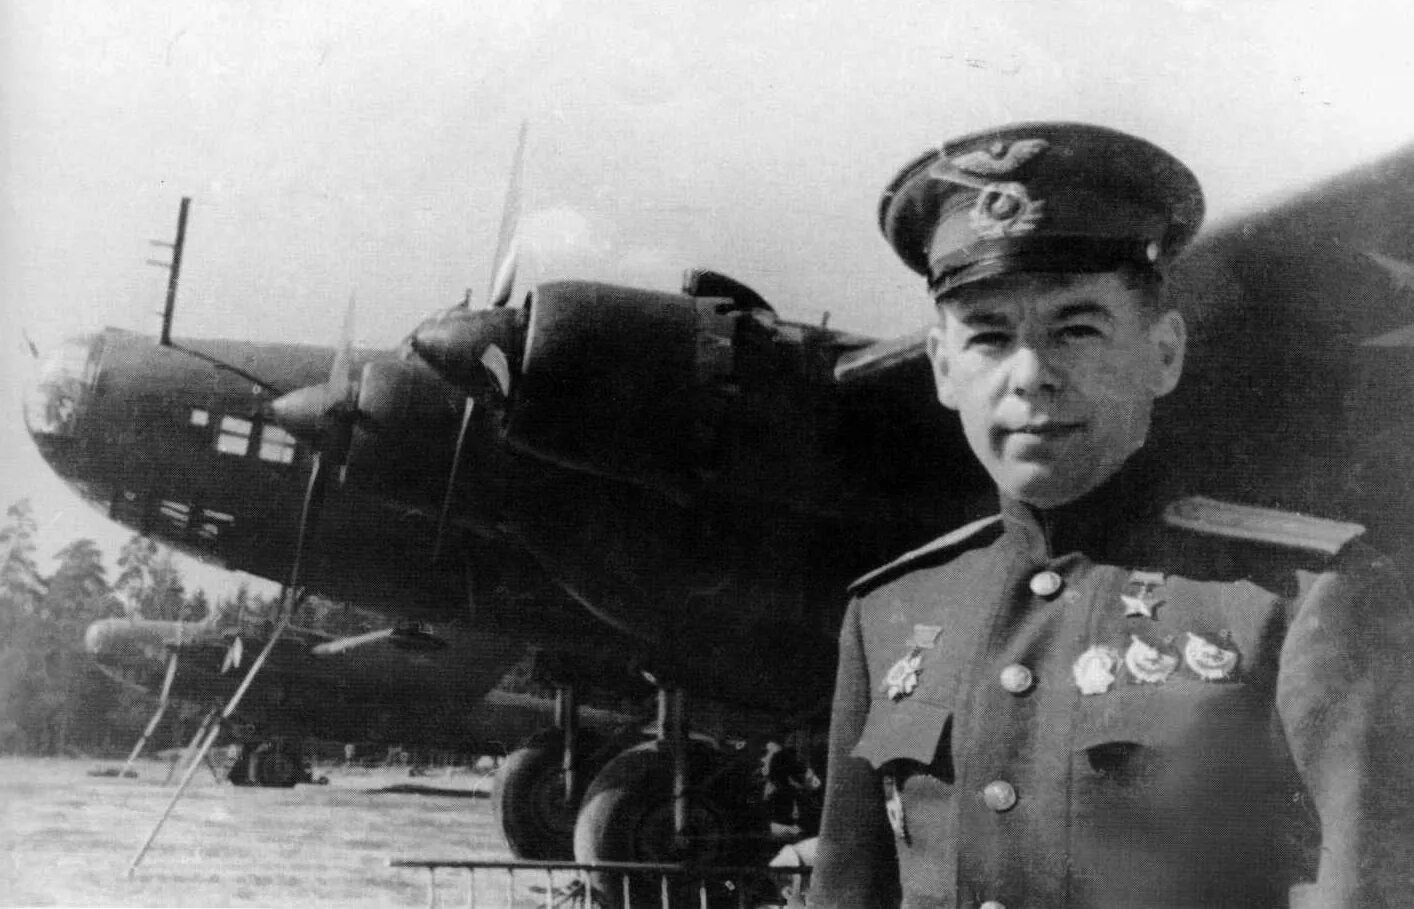 Летчик бомбардировщик герой советского союза. Петляков авиаконструктор.